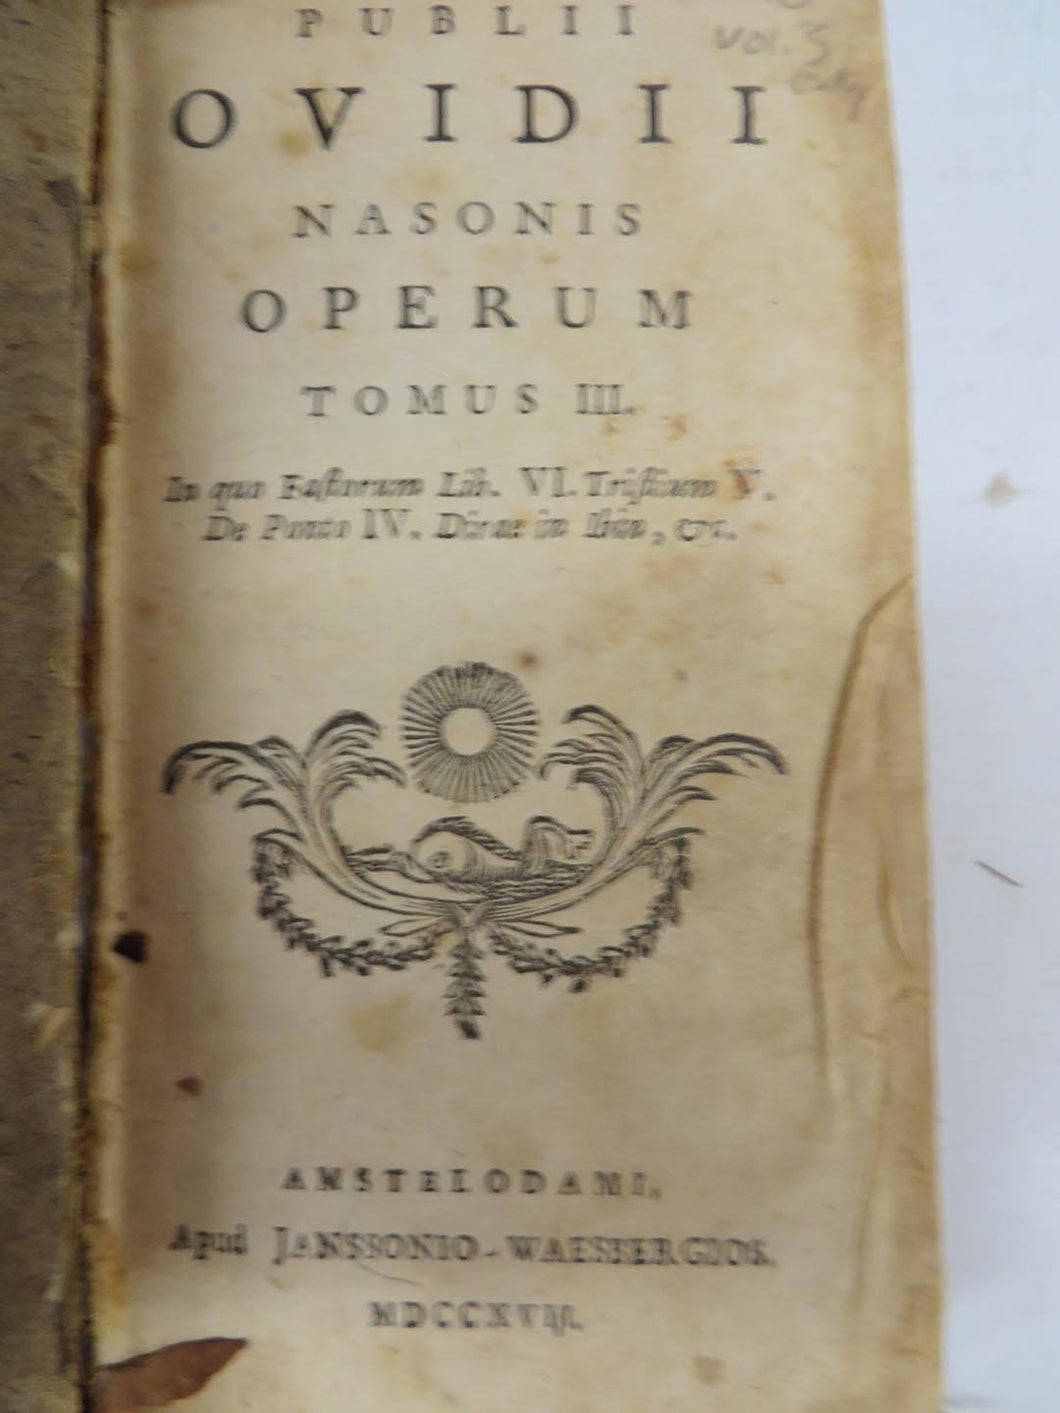 Publii Ovidii Nasonis Operum. Tomus III. 